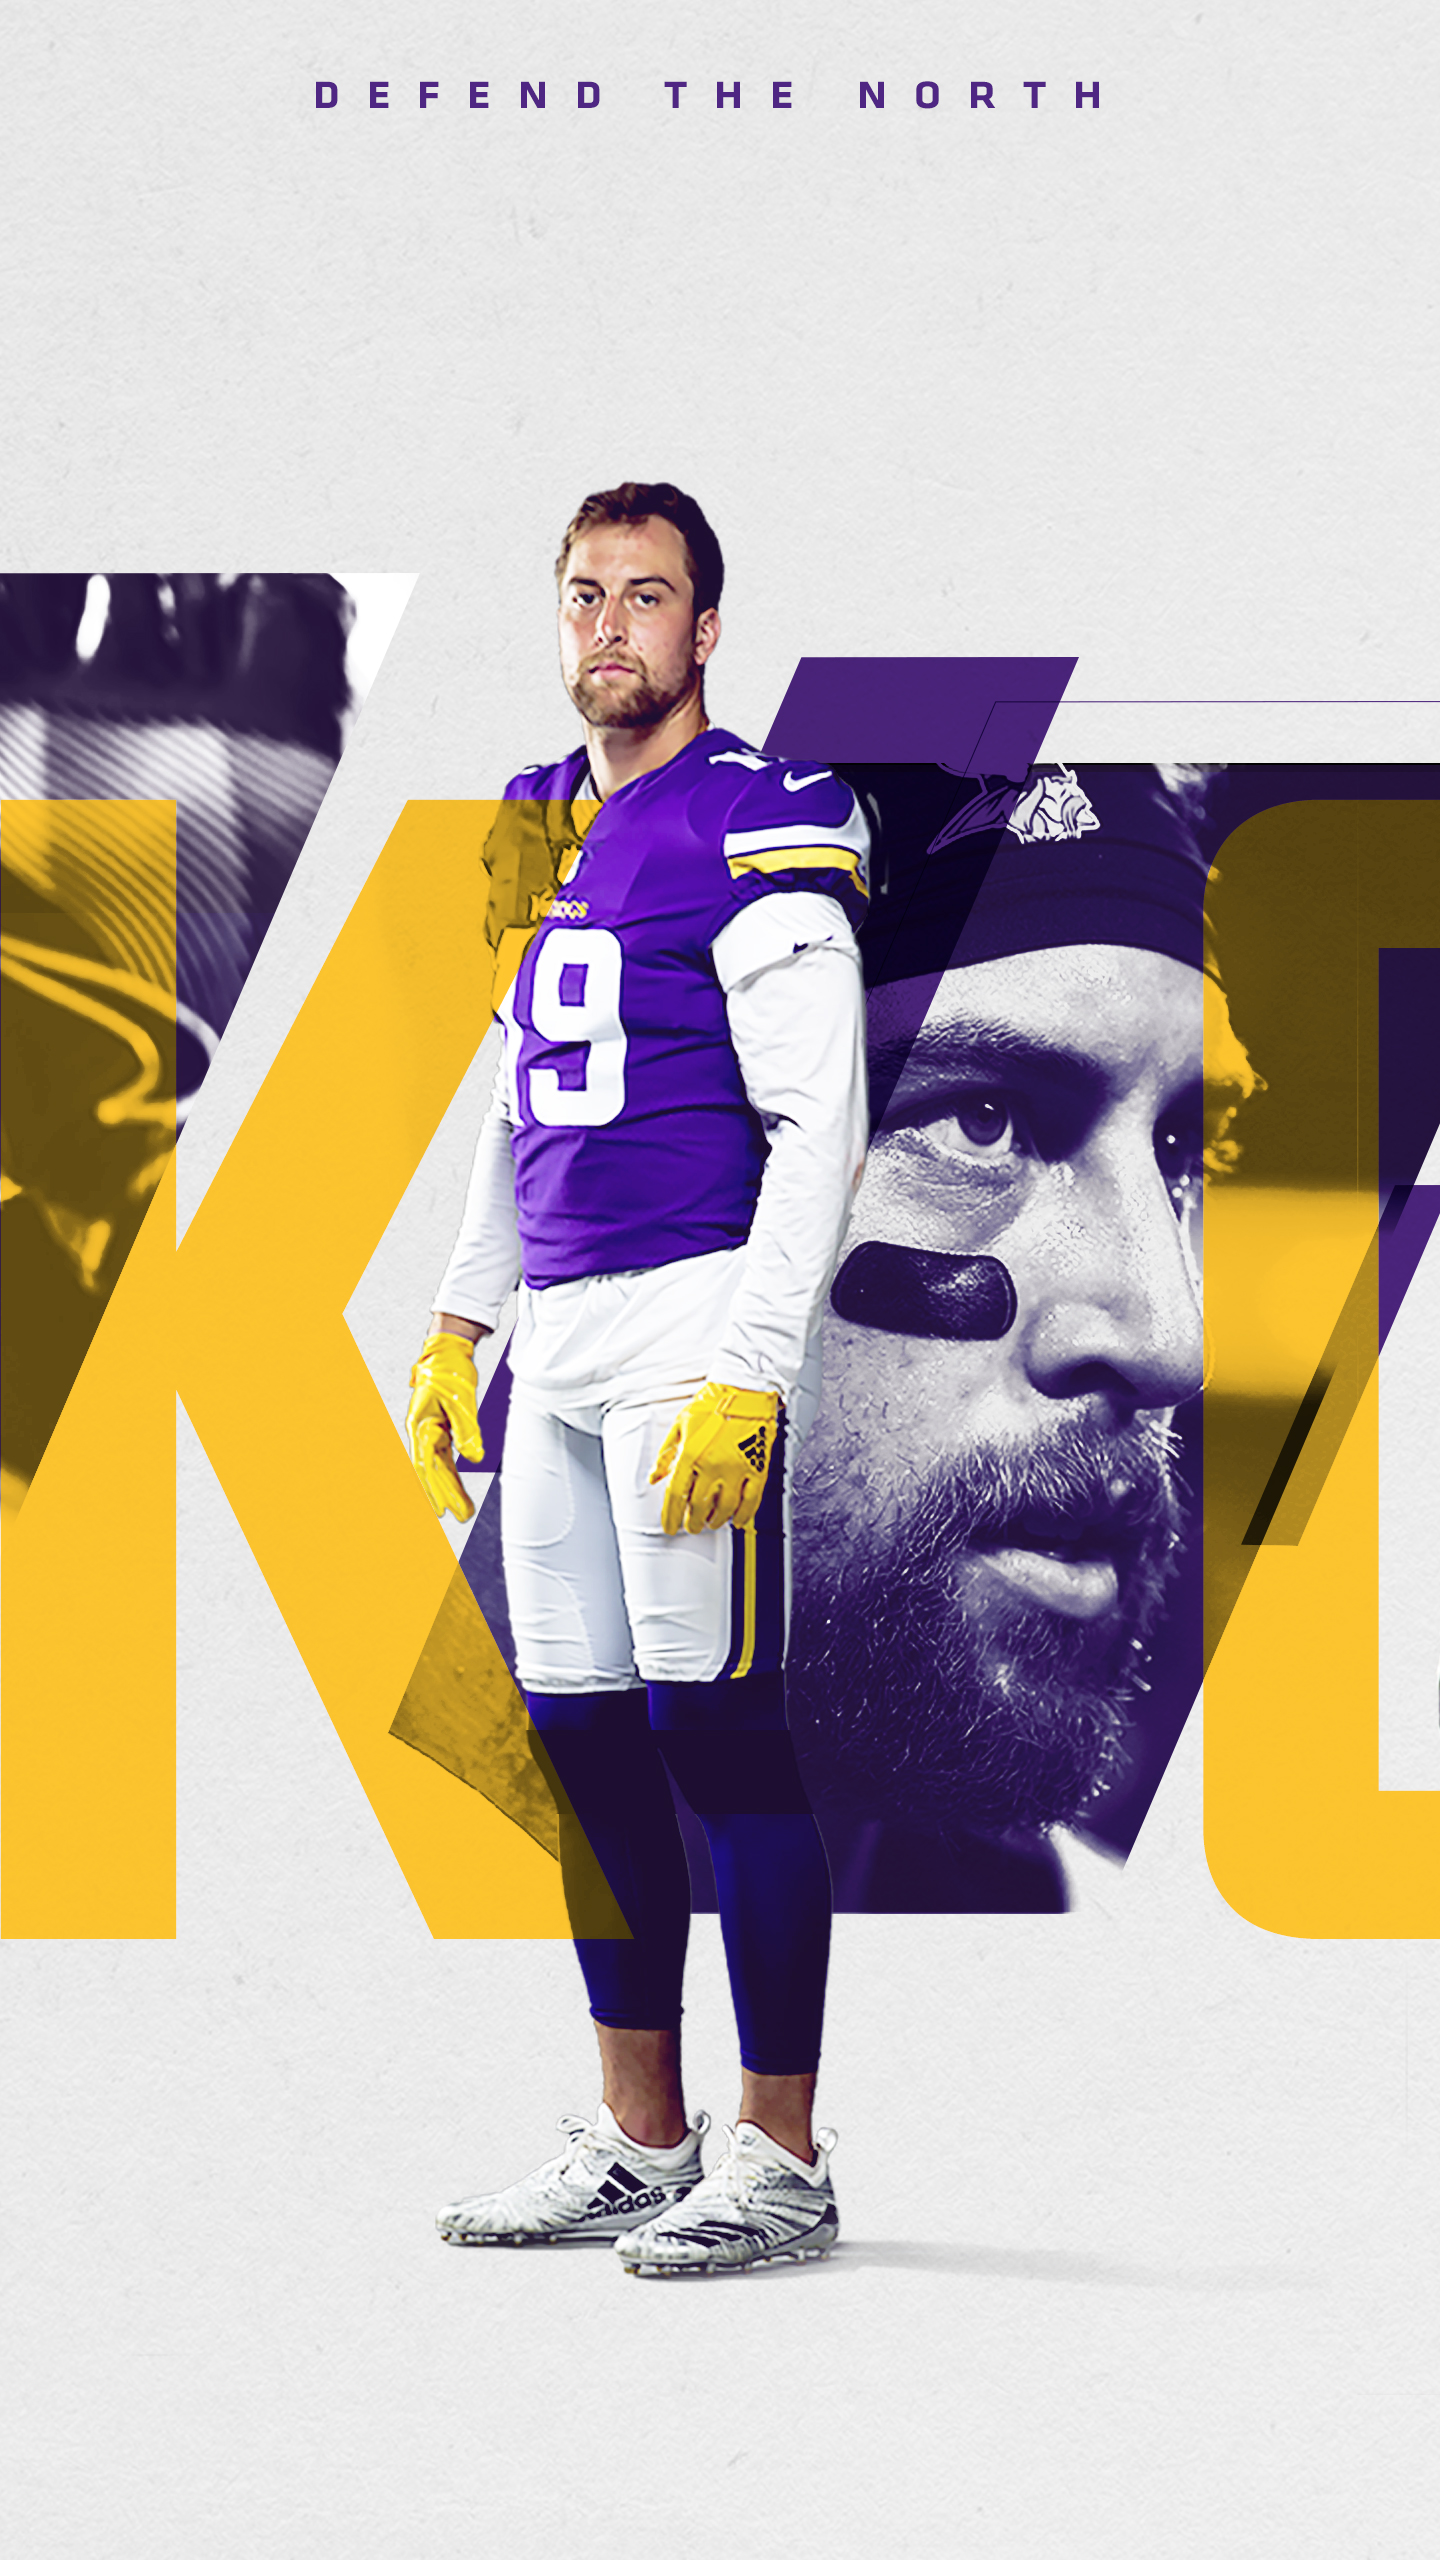 Mobile Wallpaper - Official website of the Minnesota Vikings